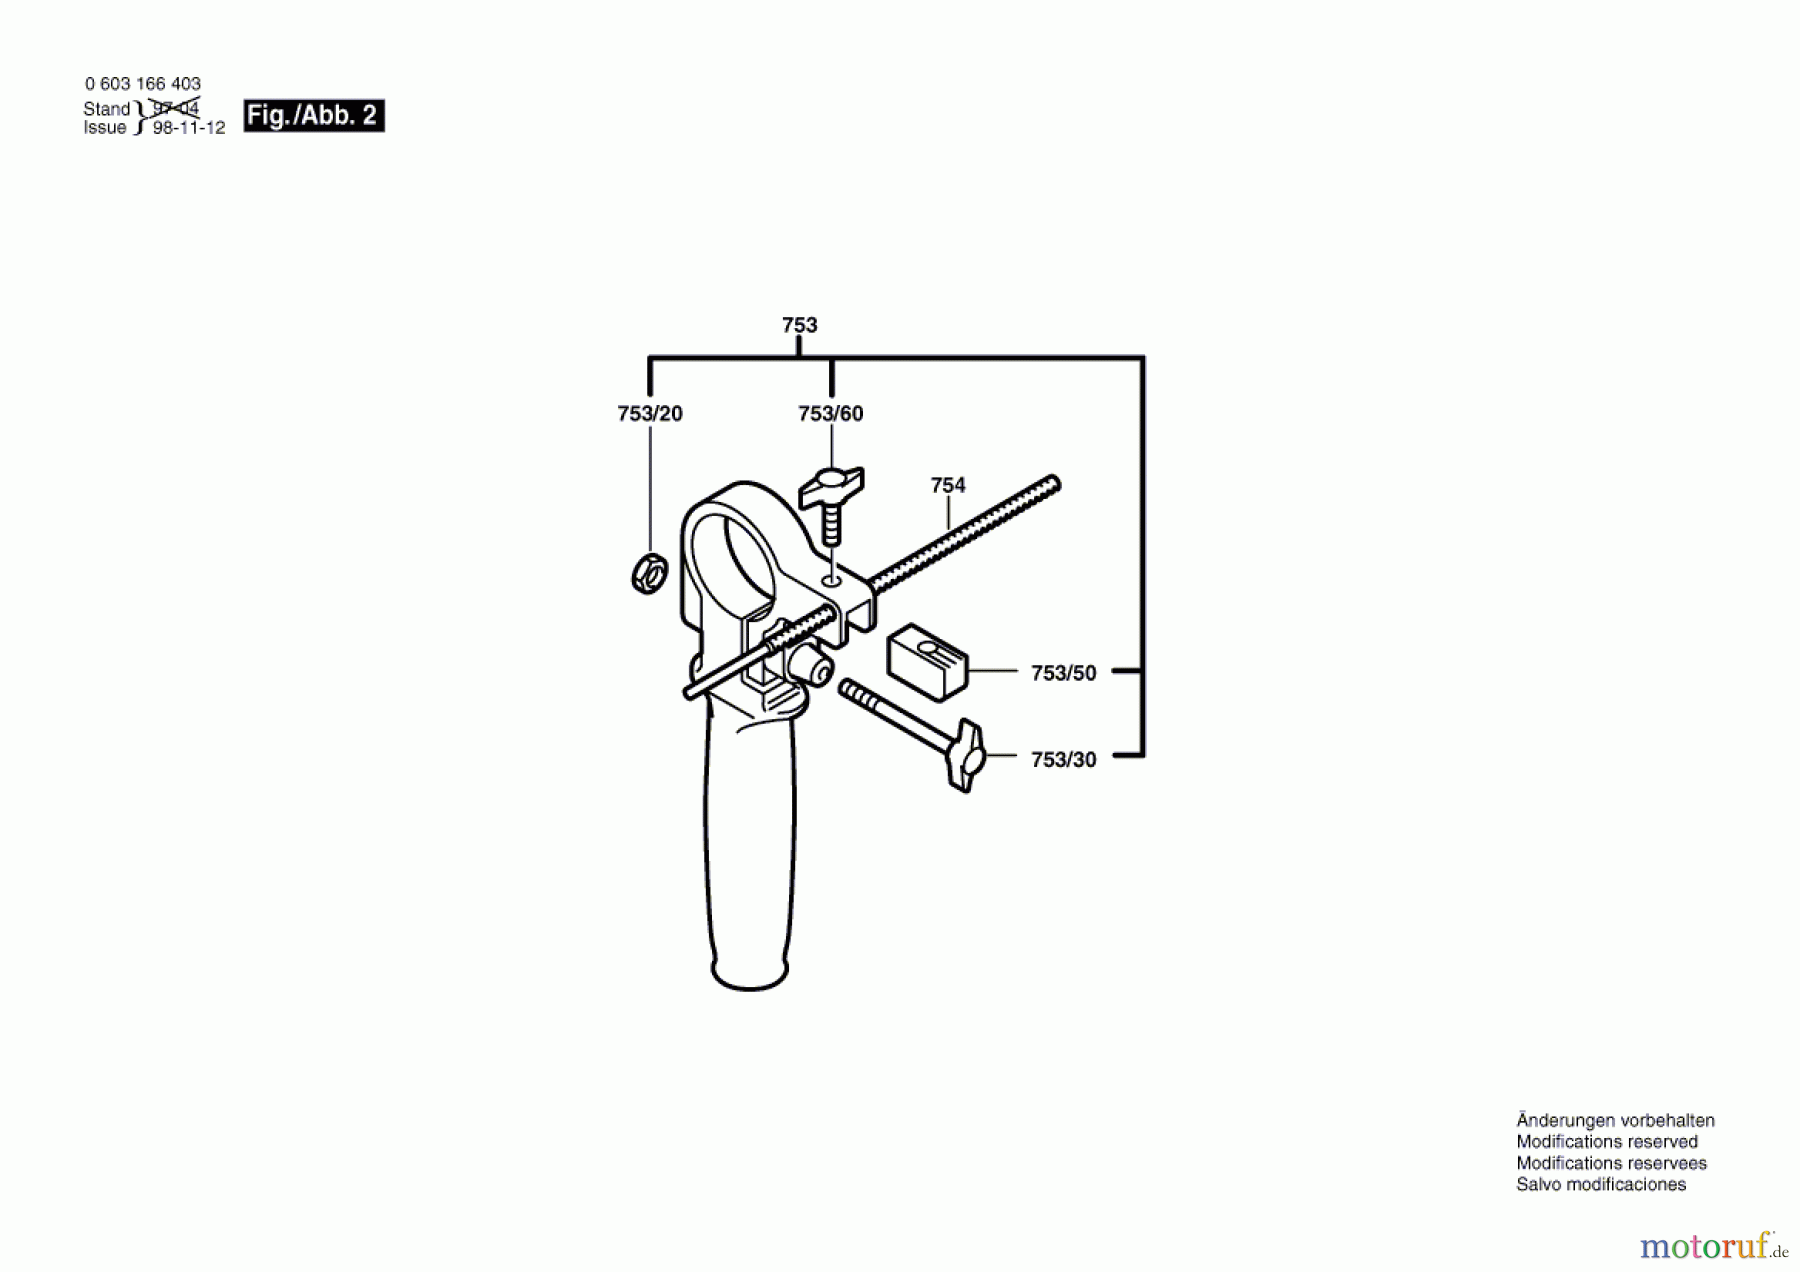  Bosch Werkzeug Schlagbohrmaschine CSB 850-2 RET Seite 2